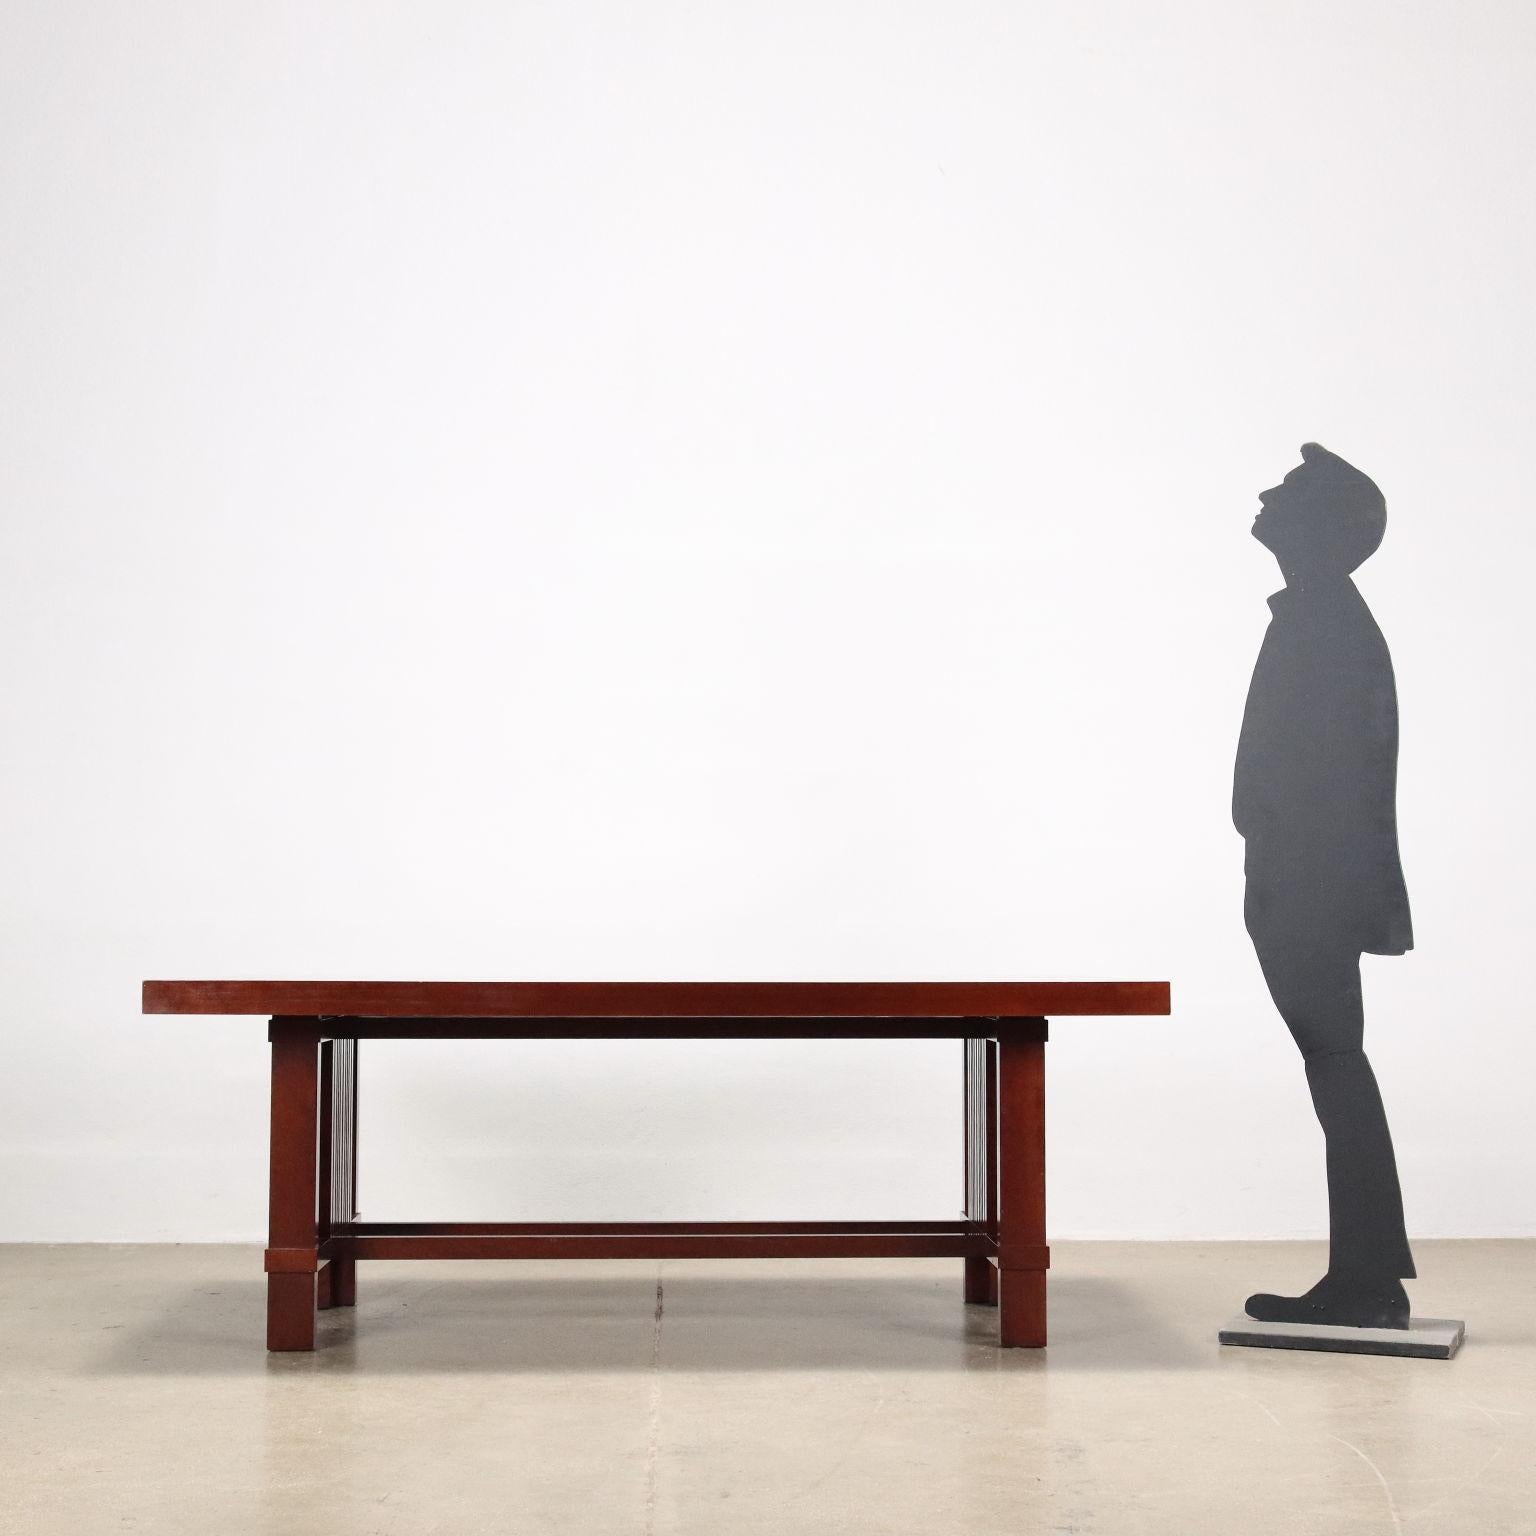 Table rectangulaire élégante et austère en merisier massif. Conçu par Frank Lloyd Wright en 1925, produit par Cassina depuis 1989.